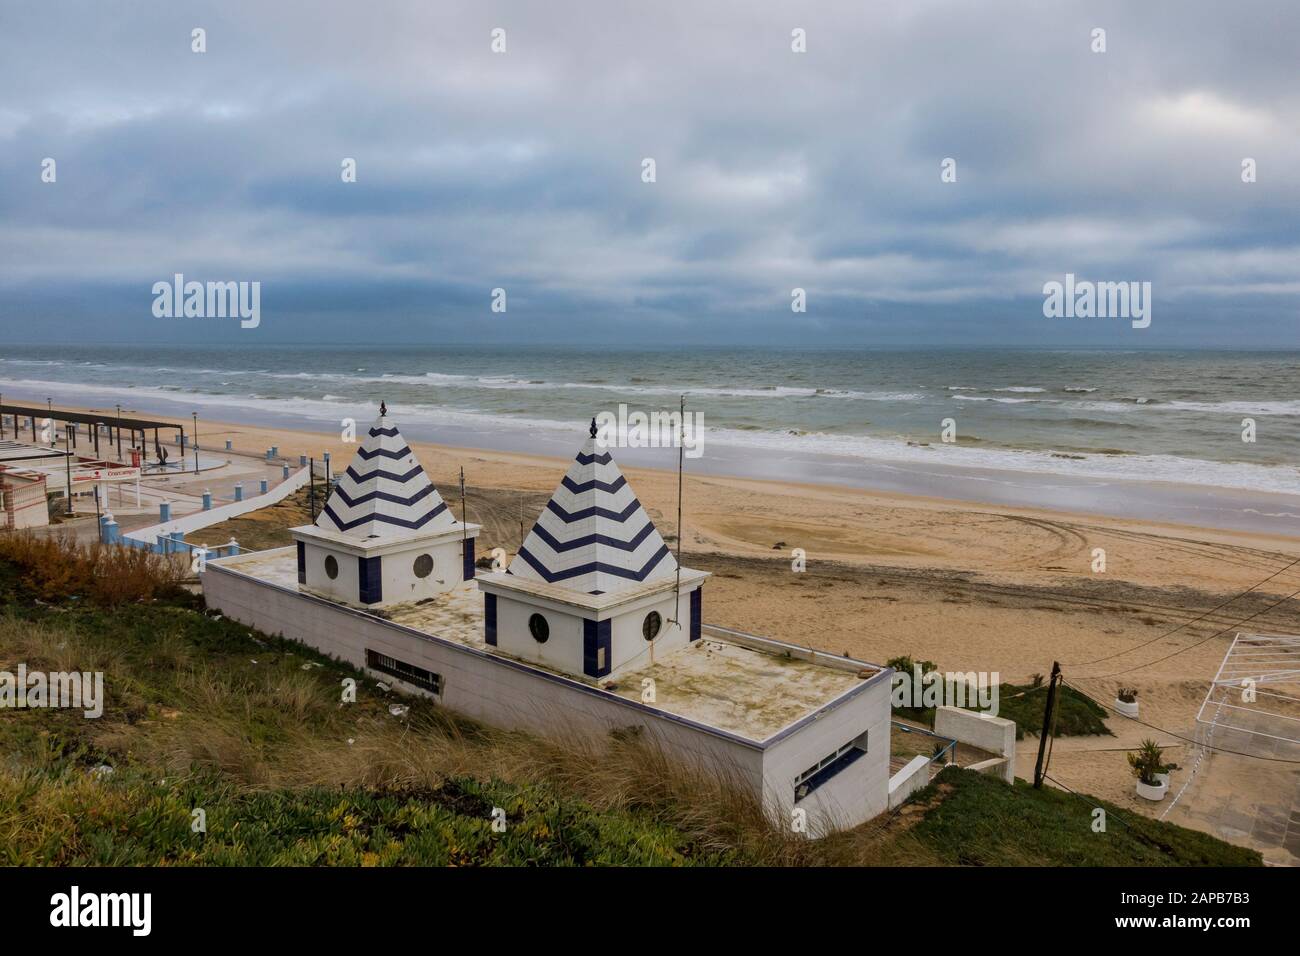 Matalascanas spiaggia resort di sviluppo turistico, in inverno, Huelva, Spagna Foto Stock